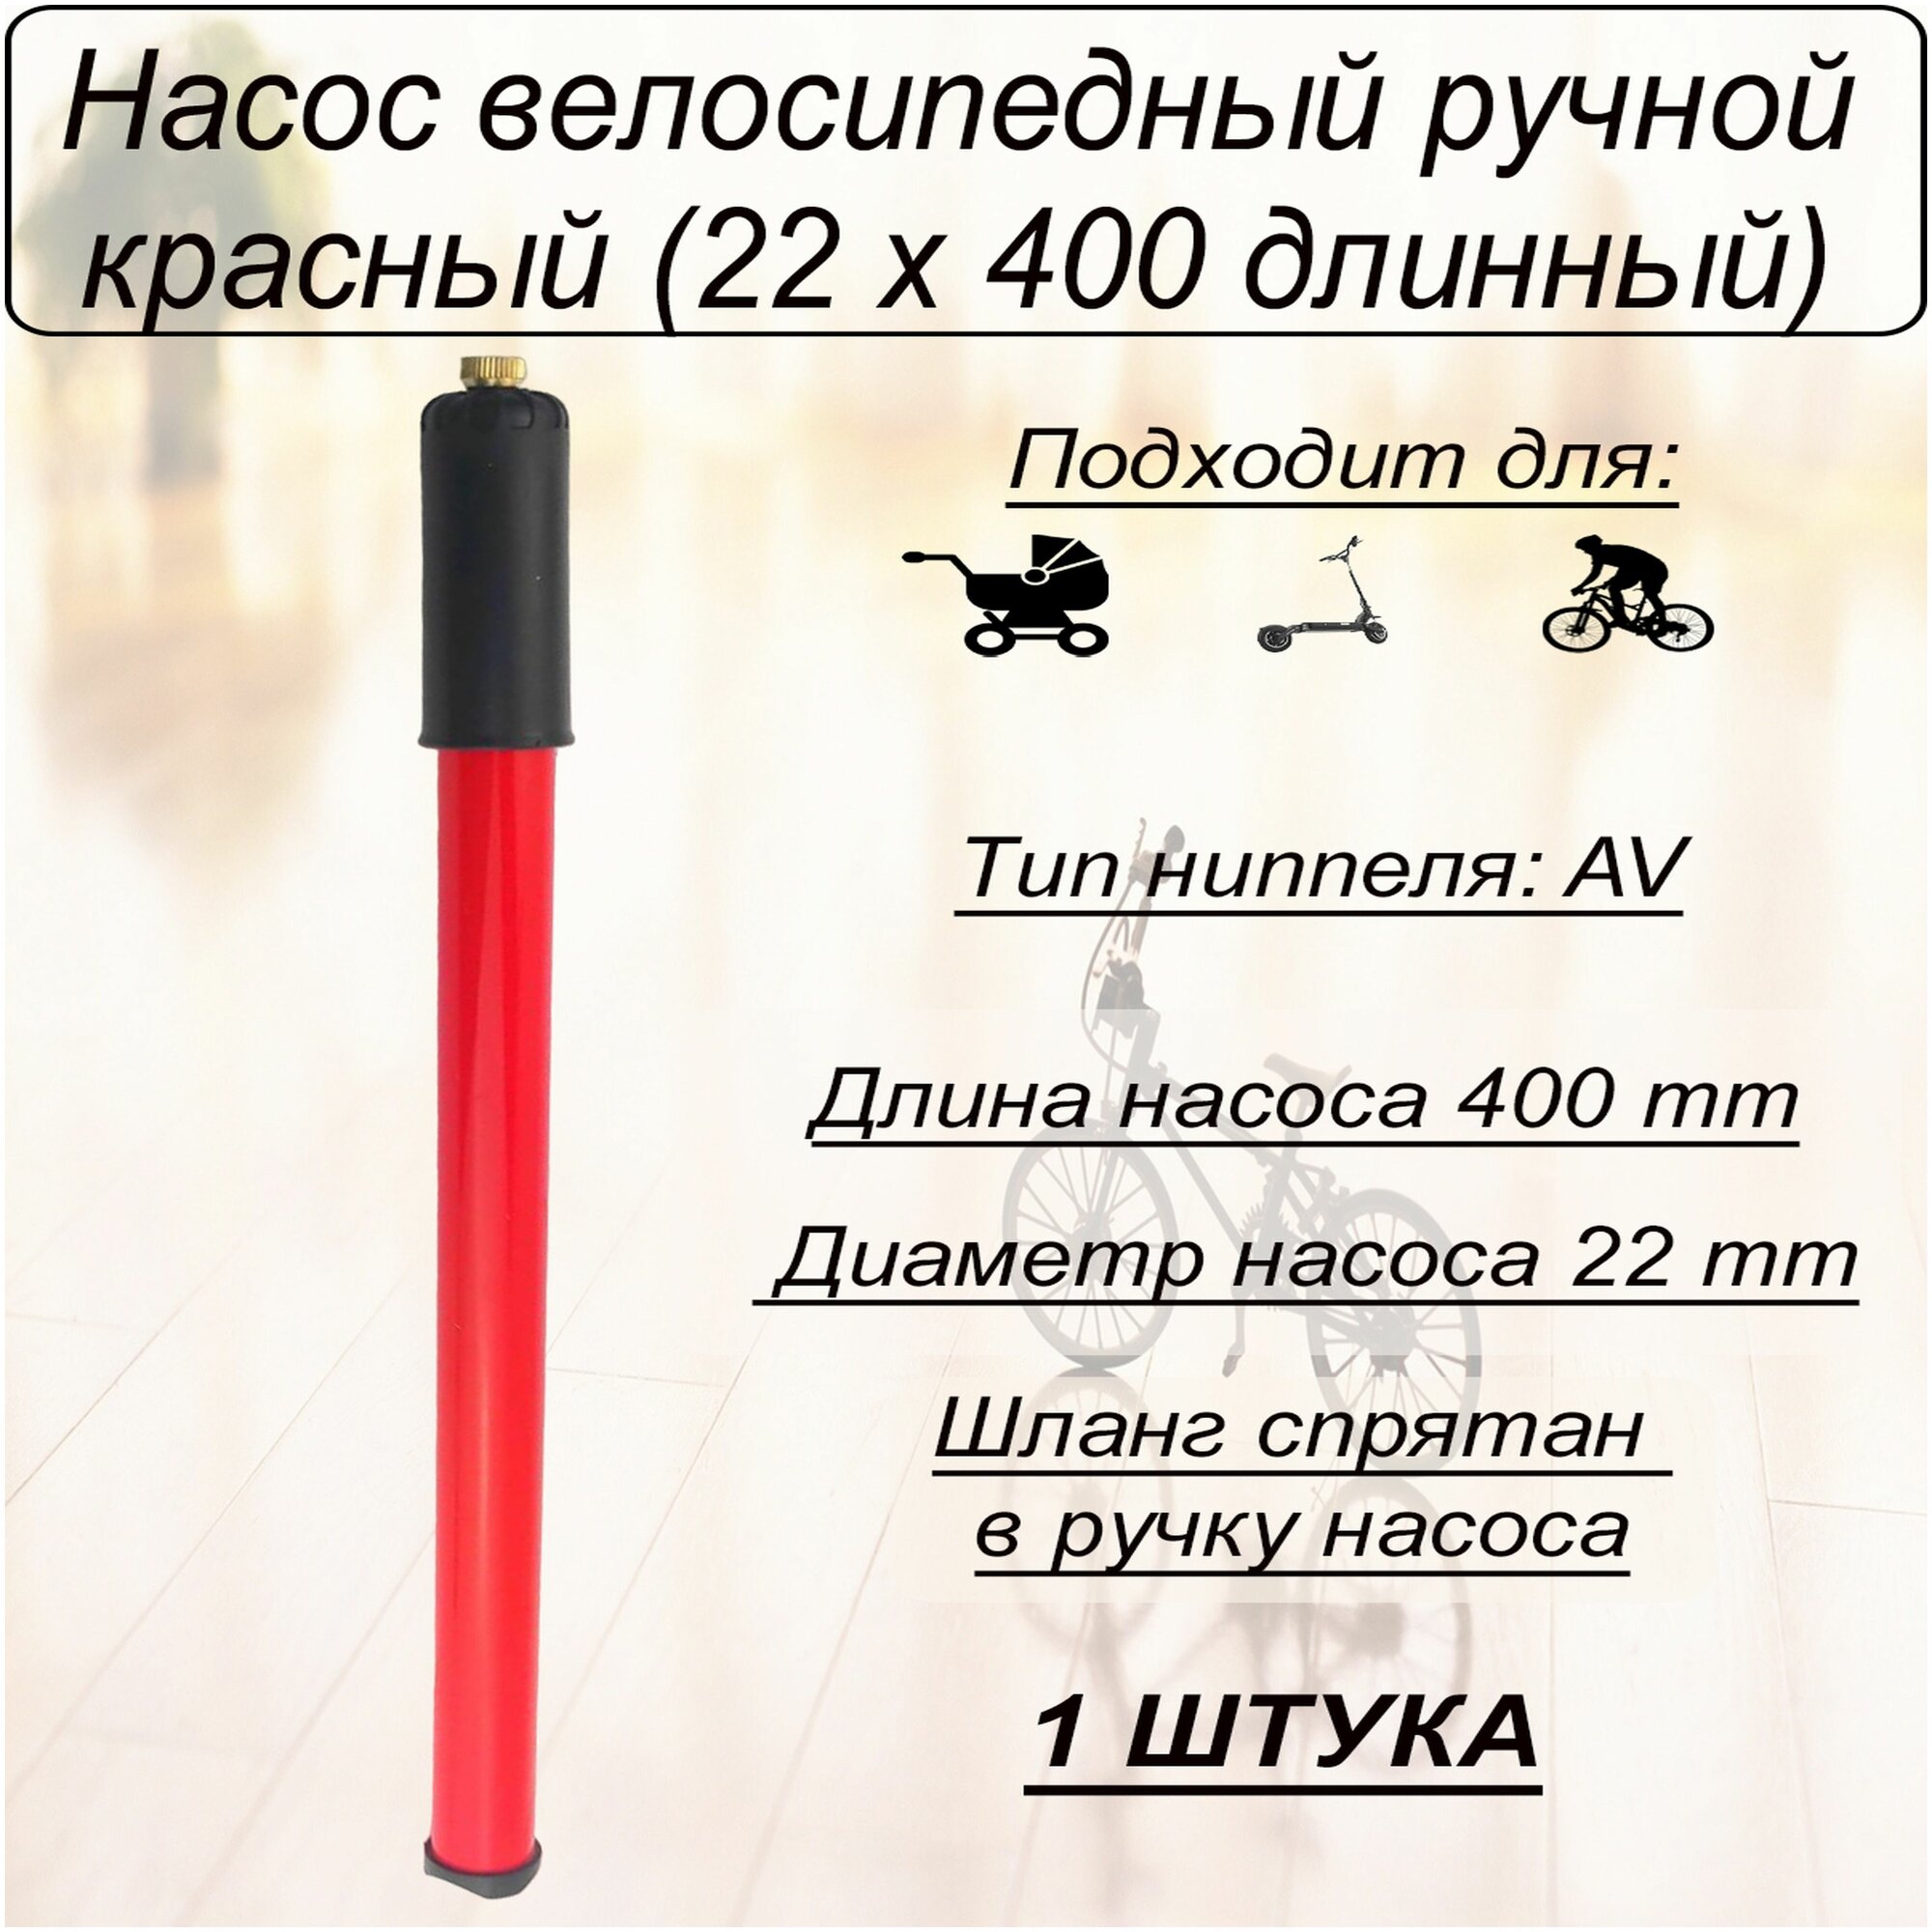 Насос велосипедный ручной красный (22 х 400 длинный)